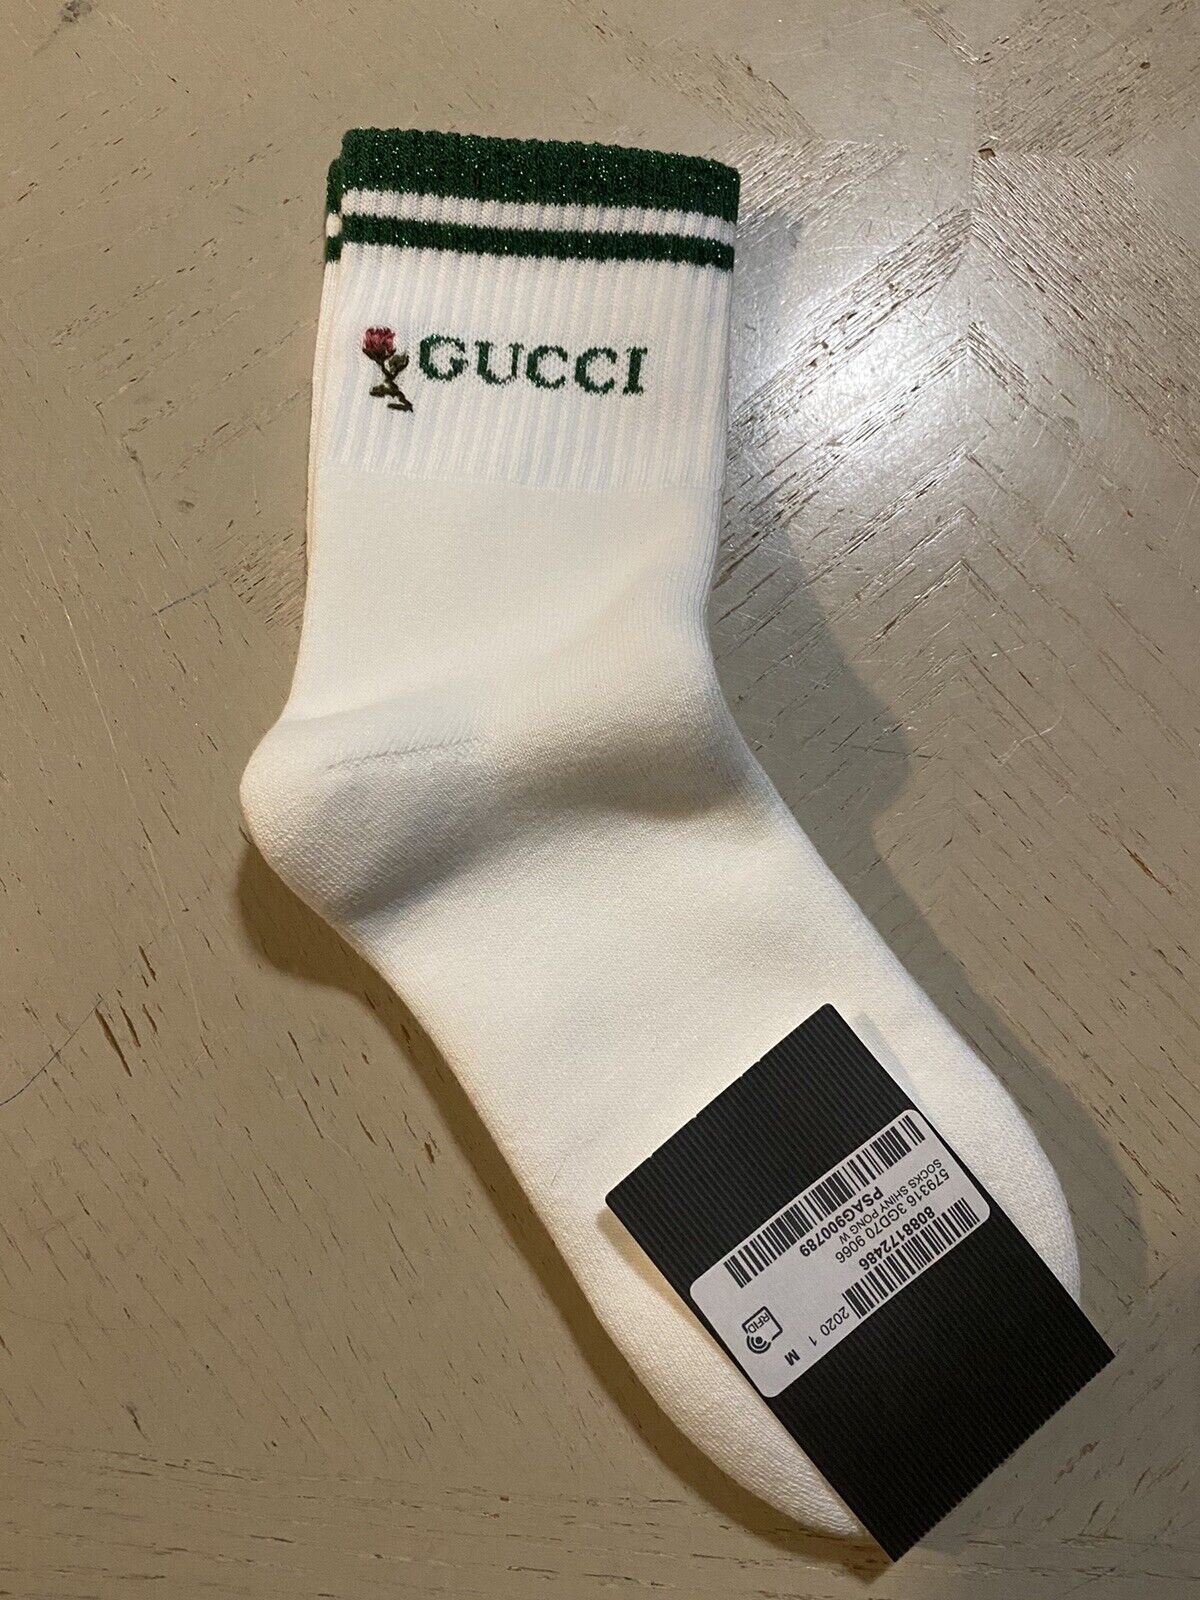 Хлопковые носки NWT Gucci с монограммой Gucci, белые/зеленые, размер M, Италия